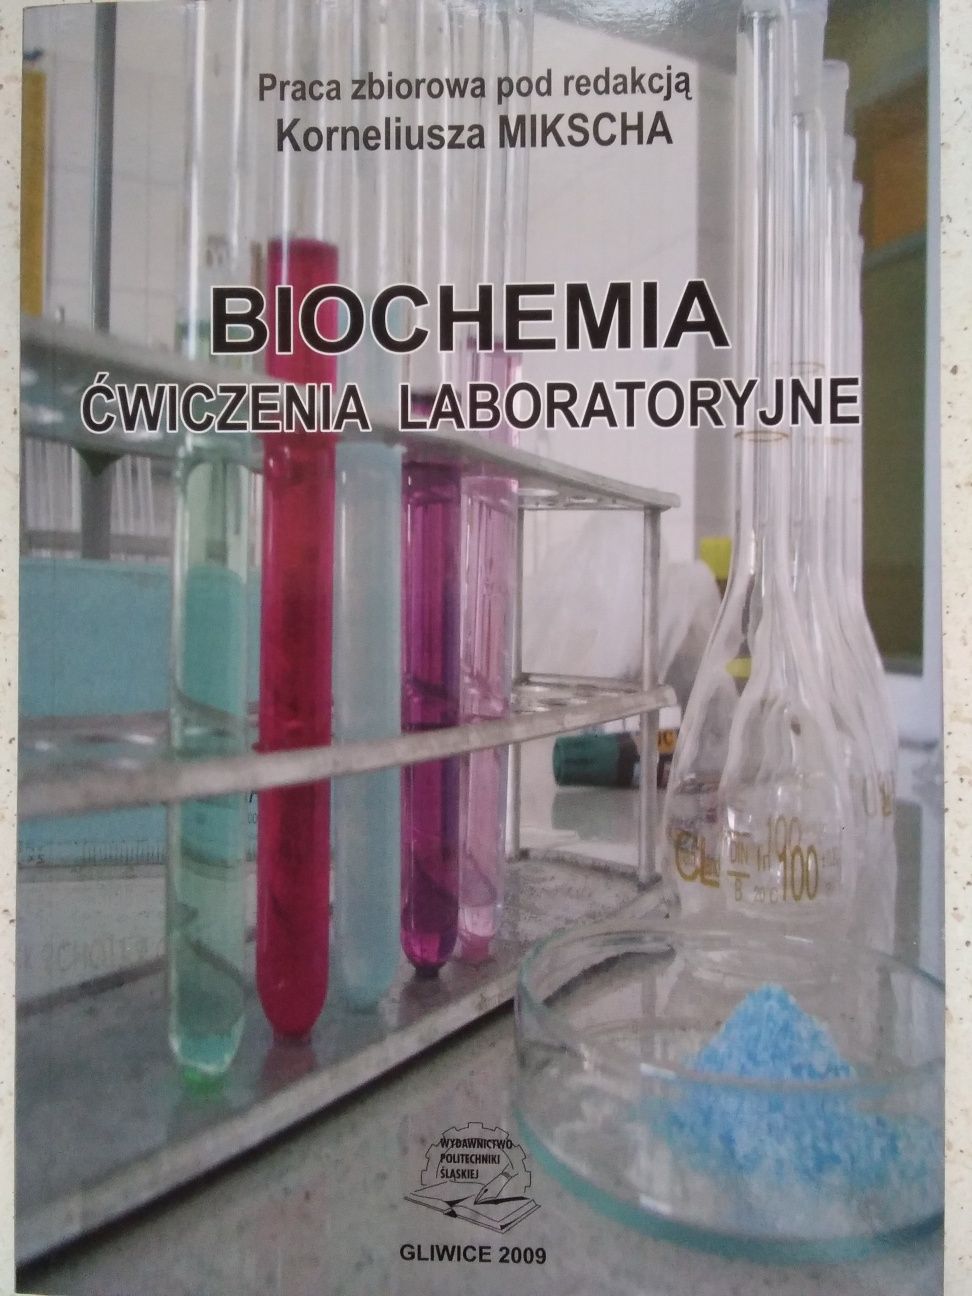 Biochemia, ćwiczenia laboratoryjne,. K.Miksh